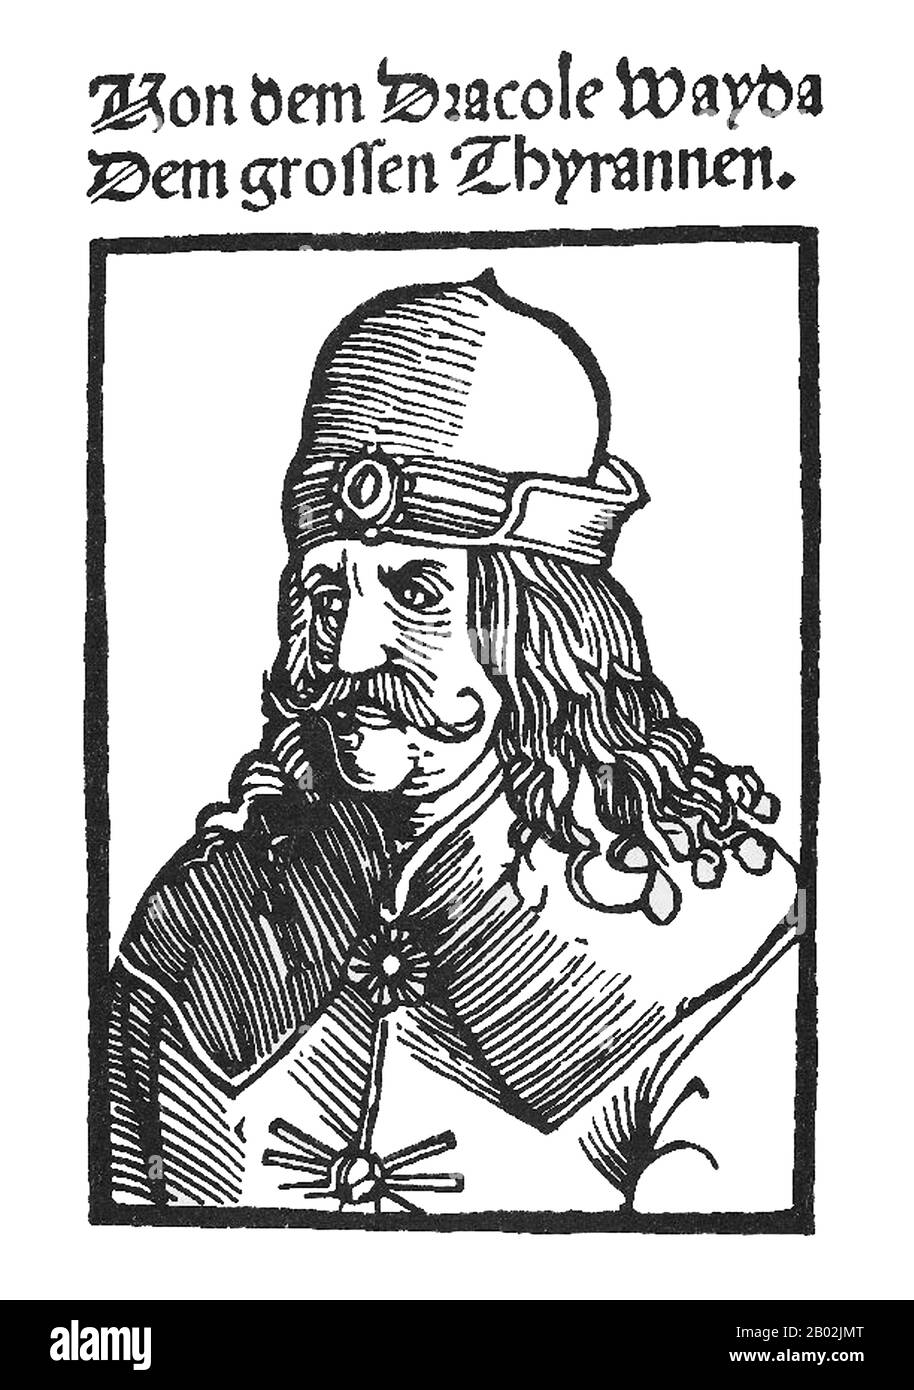 Vlad III, Principe di Wallachia (1431–1476/77), era un membro della Casa di Drăculești, un ramo della Casa di Basarab, anche noto, usando il suo patronimico, come (Vlad) Drăculea o (Vlad) Dracula. Fu soprannominato postumo Vlad l'Impalatore (rumeno Vlad Țepeș), ed era una Voivode di Wallachia, che regnò principalmente dal 1456 al 1462, periodo dell'incipiente conquista ottomana dei Balcani. Suo padre, Vlad II Dracul, era un membro Dell'Ordine del Drago, che fu fondato per proteggere il cristianesimo nell'Europa orientale. Vlad III è venerato come eroe popolare in Romania così come altre parti o Foto Stock